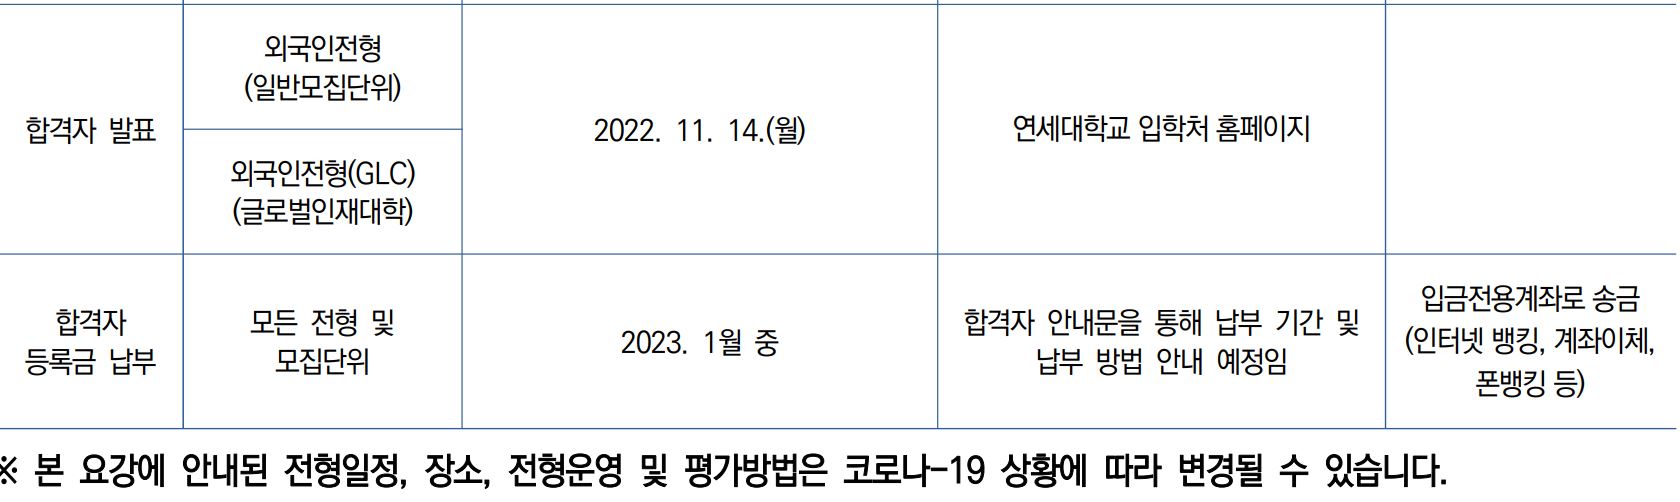 연세대 외국인전형 모집단위 지원자격 전형일정  연세대 일반학과 외국인전형 모집단위 지원자격 전형일정 Yonsei Univ. Admission Majors Eligibility and Schedule   for Foreigners_10_전형일정.JPG